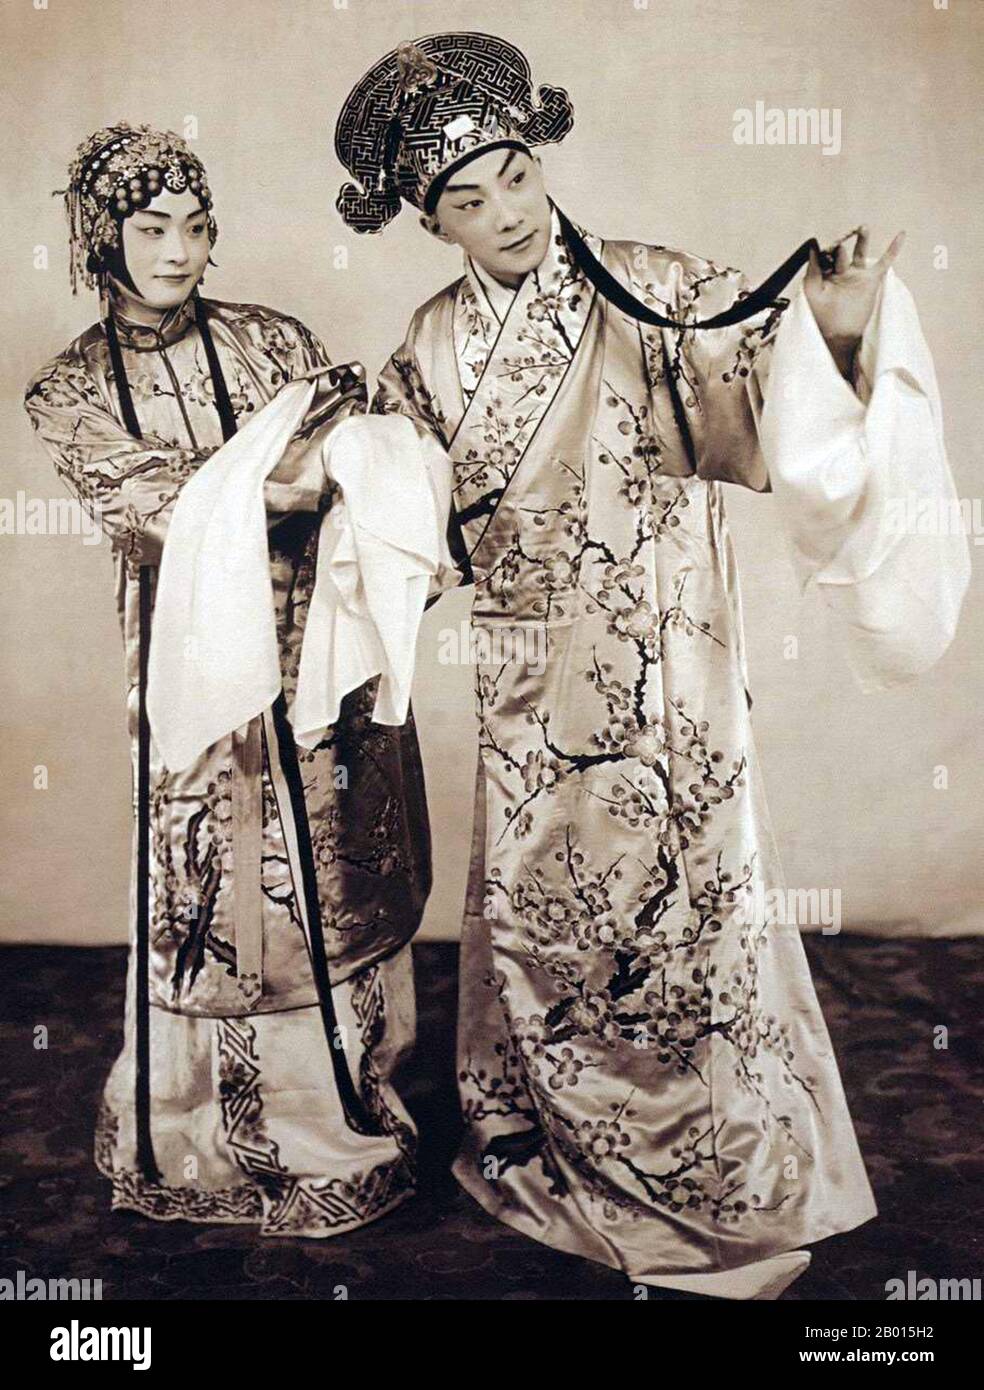 China: Mei Lanfang, berühmter Pekinger Opernkünstler (1894-1961), c. 1920-1929. Mei Lan wurde in Taizhou, Jiangsu, als Sohn einer Familie von Künstlern der Pekinger Oper und Kunqu geboren. Sein Bühnendebüt gab er 1904 im Alter von 10 Jahren am Guanghe Theater. In seiner 50-jährigen Bühnenlaufbahn behielt er eine starke Kontinuität bei, während er immer an neuen Techniken arbeitete. Seine berühmtesten Rollen waren die der weiblichen Charaktere; die gekonnte Darstellung von Frauen gewann ihn internationale Anerkennung. Er spielte auch eine wichtige Rolle bei der Fortsetzung der Aufführungstradition von Kunqu. Stockfoto